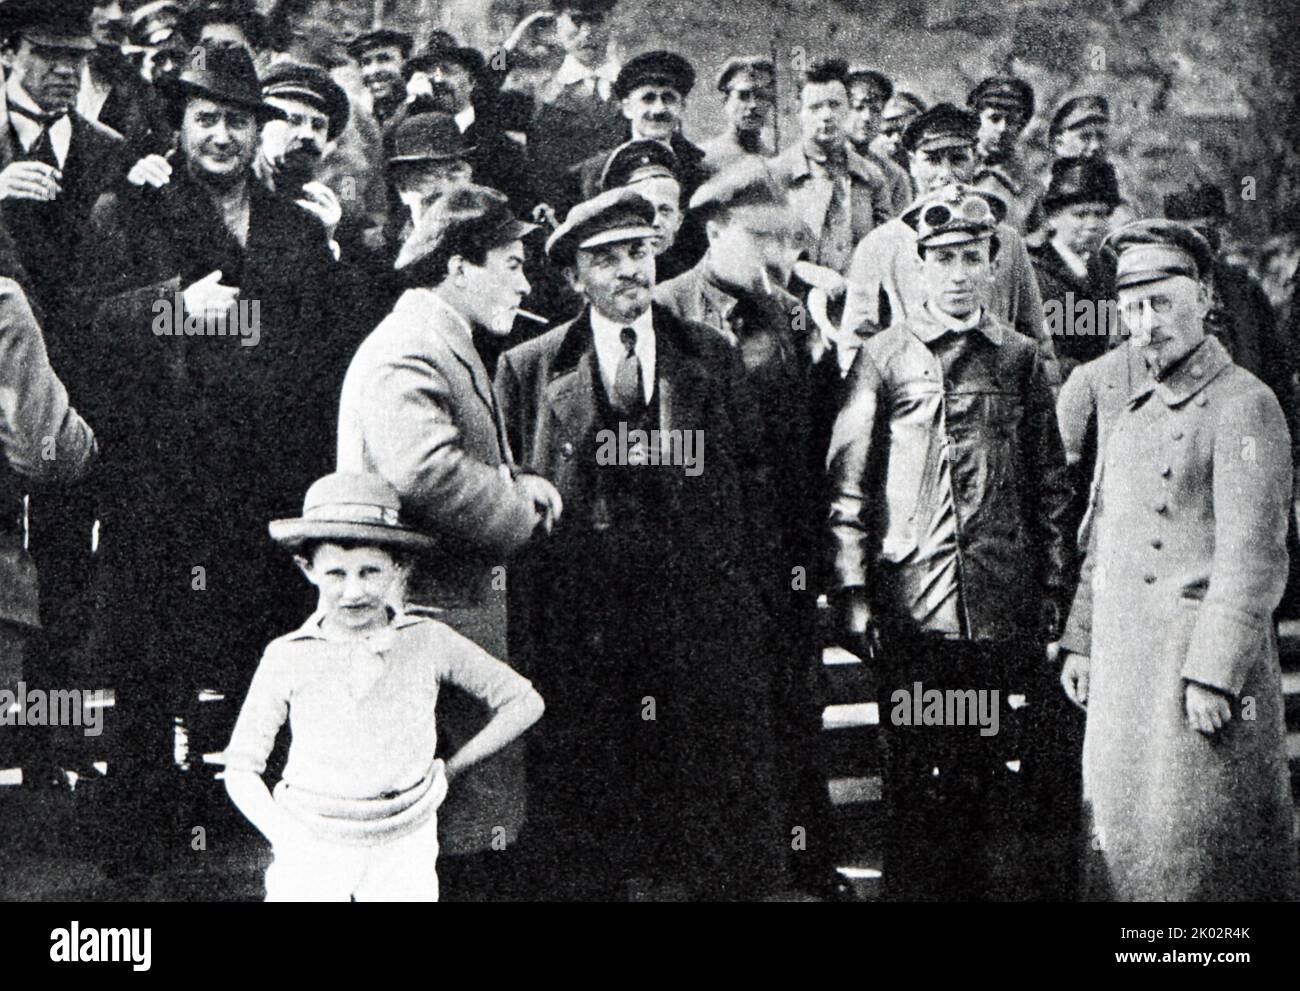 Vladimir Lénine sur la place Rouge pendant le défilé des troupes Vsevobuch. 1919, 25 mai. Moscou. Photographe - D. S. Davidson Banque D'Images